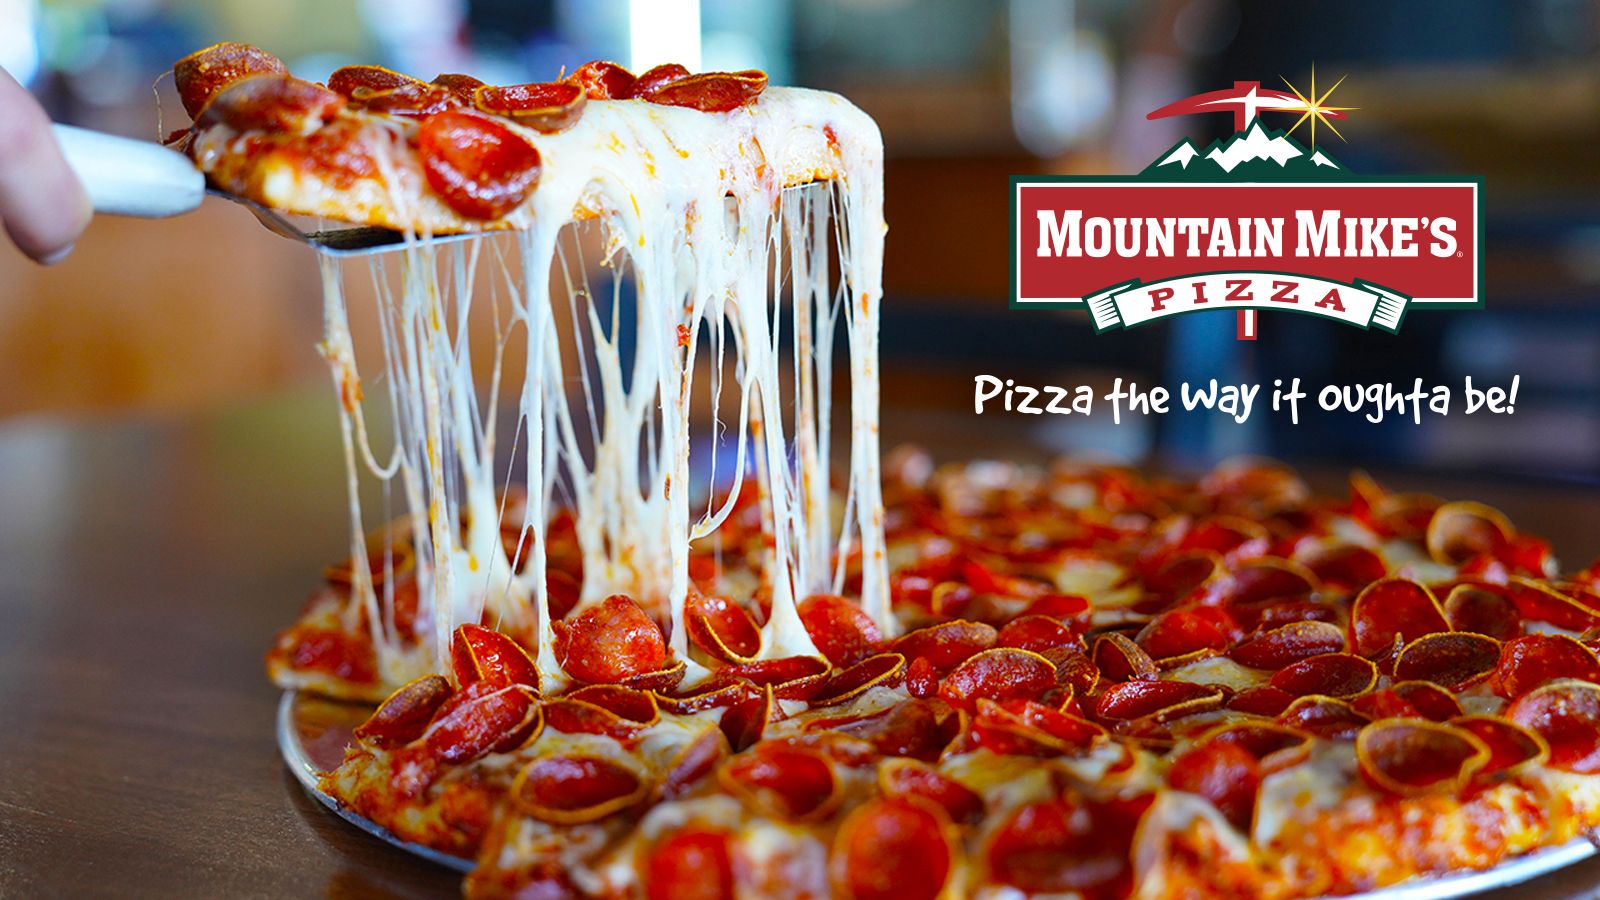 Mountain Mike's Pizza nommée l'une des chaînes de restaurants les plus performantes du pays par deux publications de premier plan